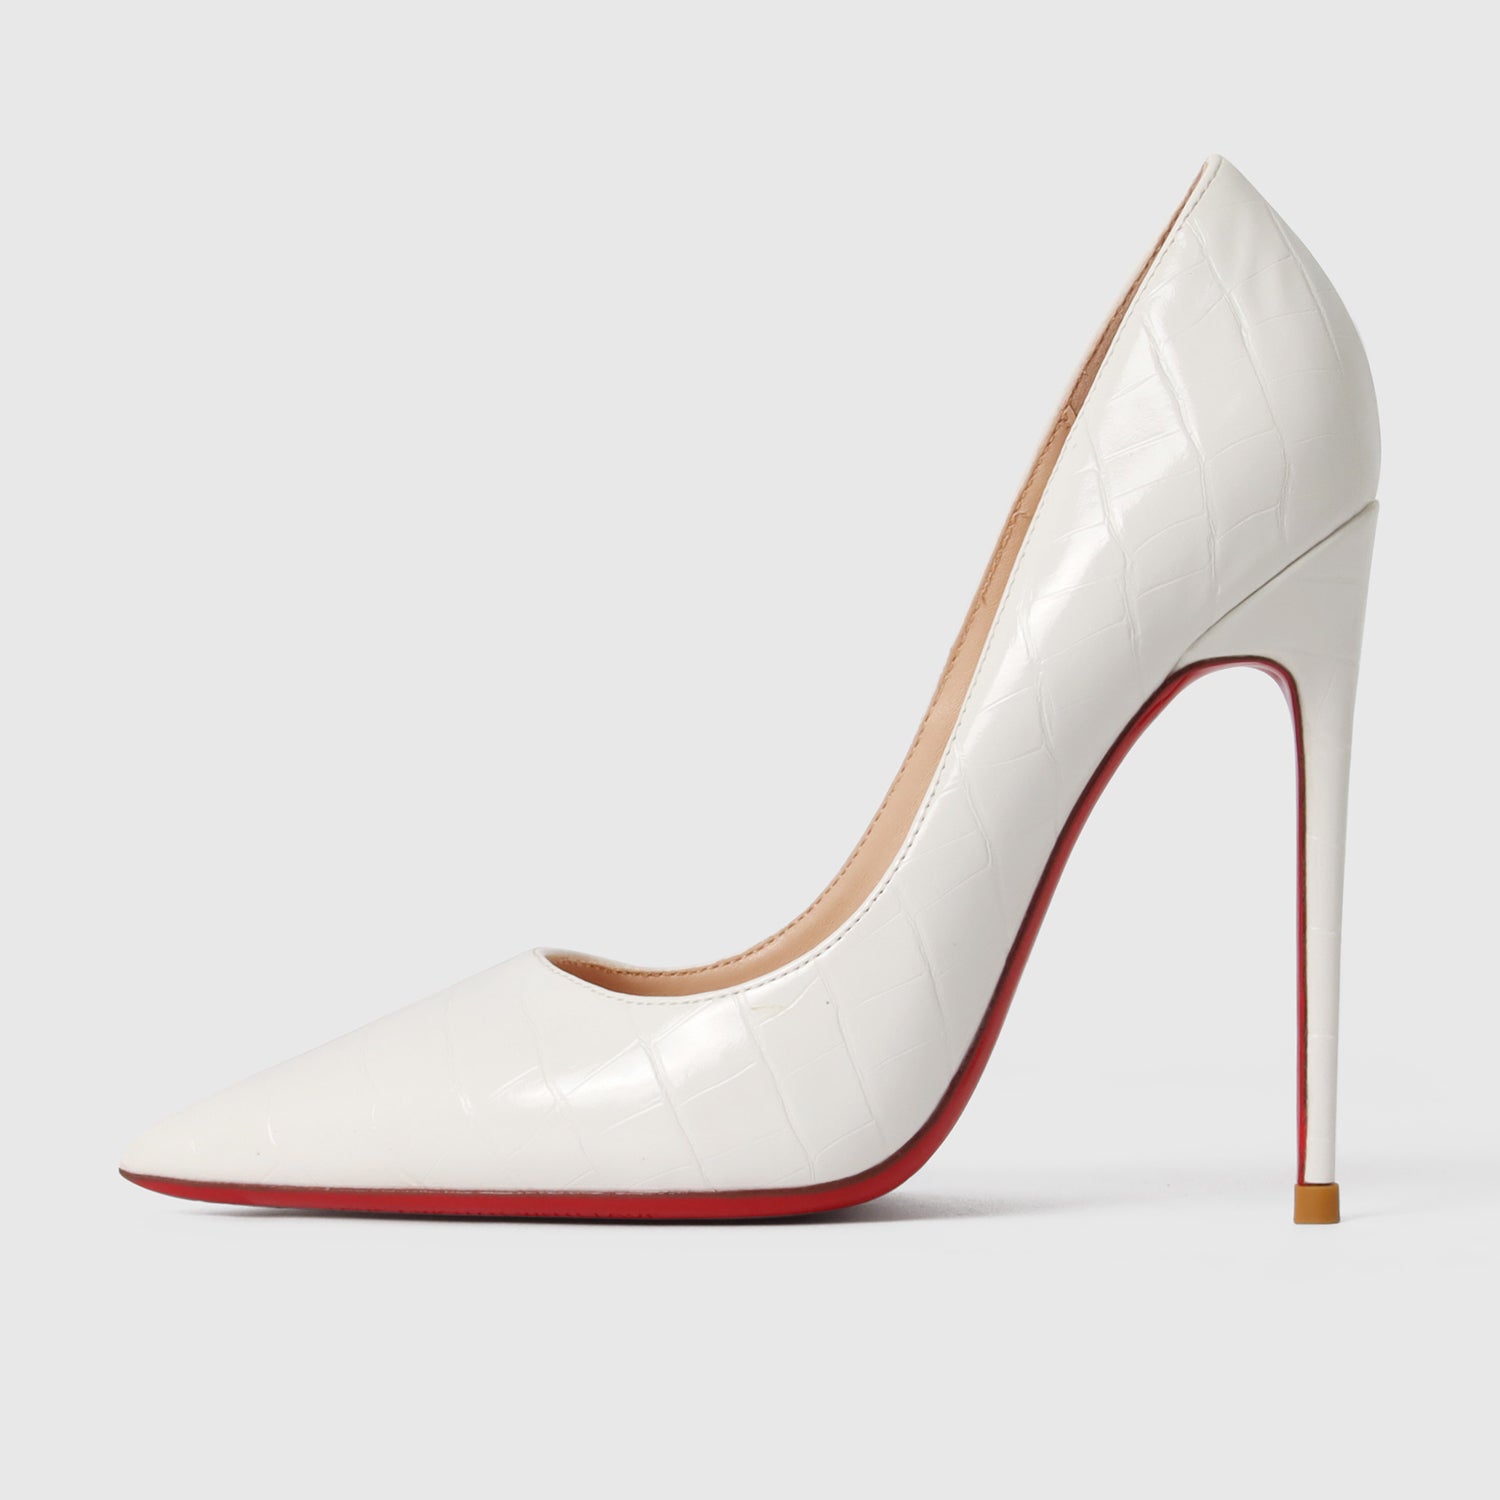 Women's Red Sole High Heels Super Fine Heel - Shoes -  Trend Goods